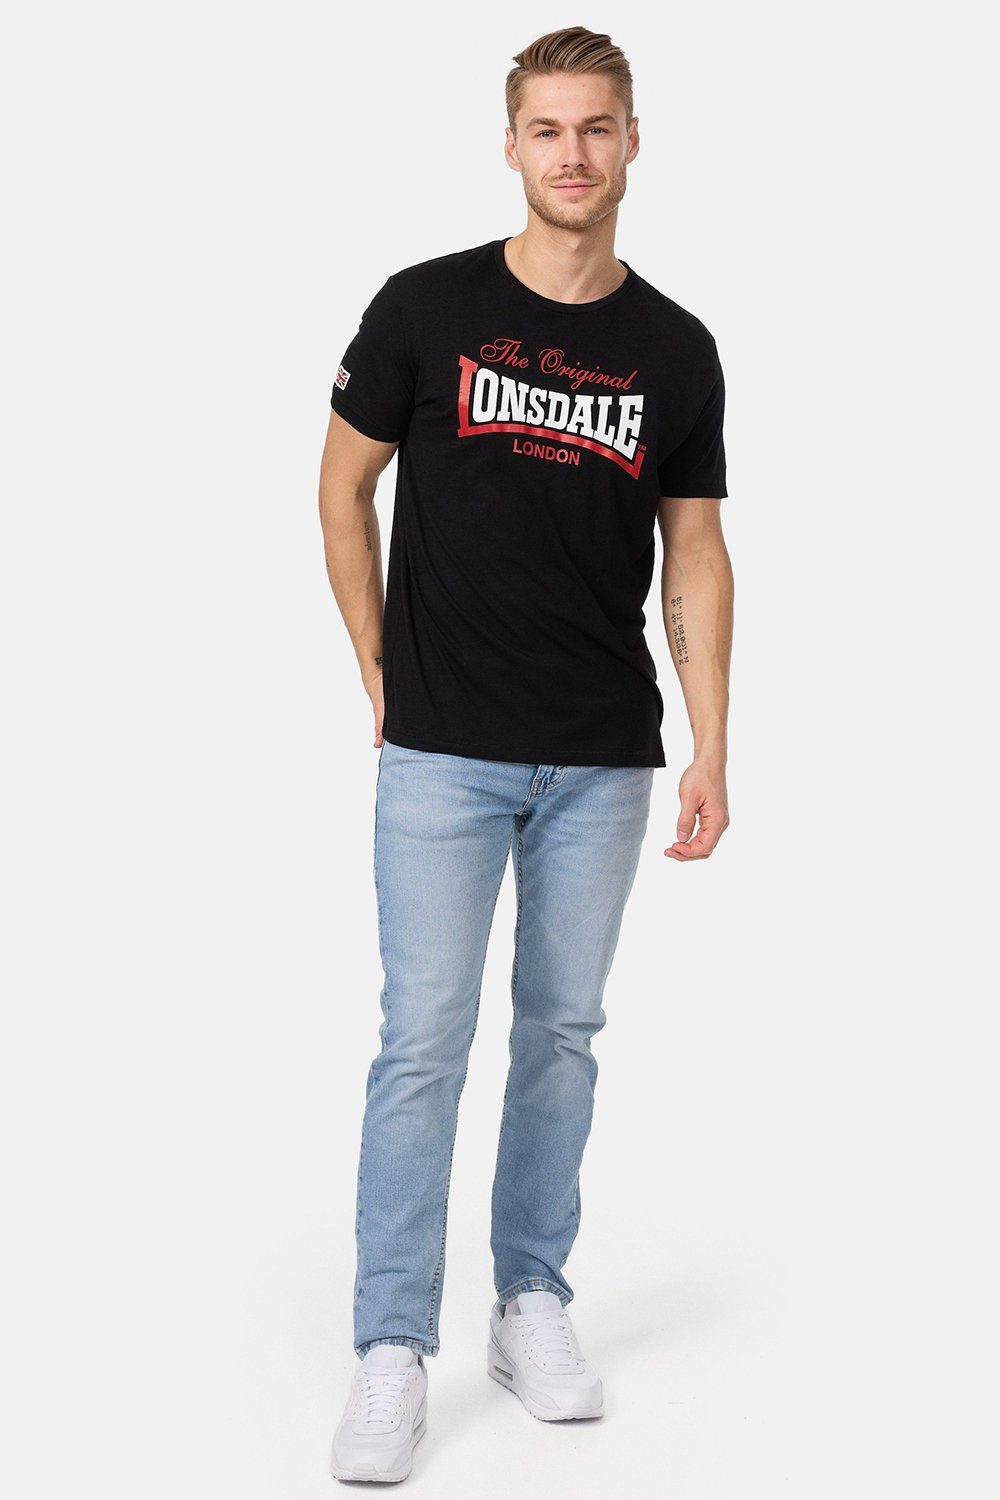 ALDINGHAM T-Shirt Lonsdale Black